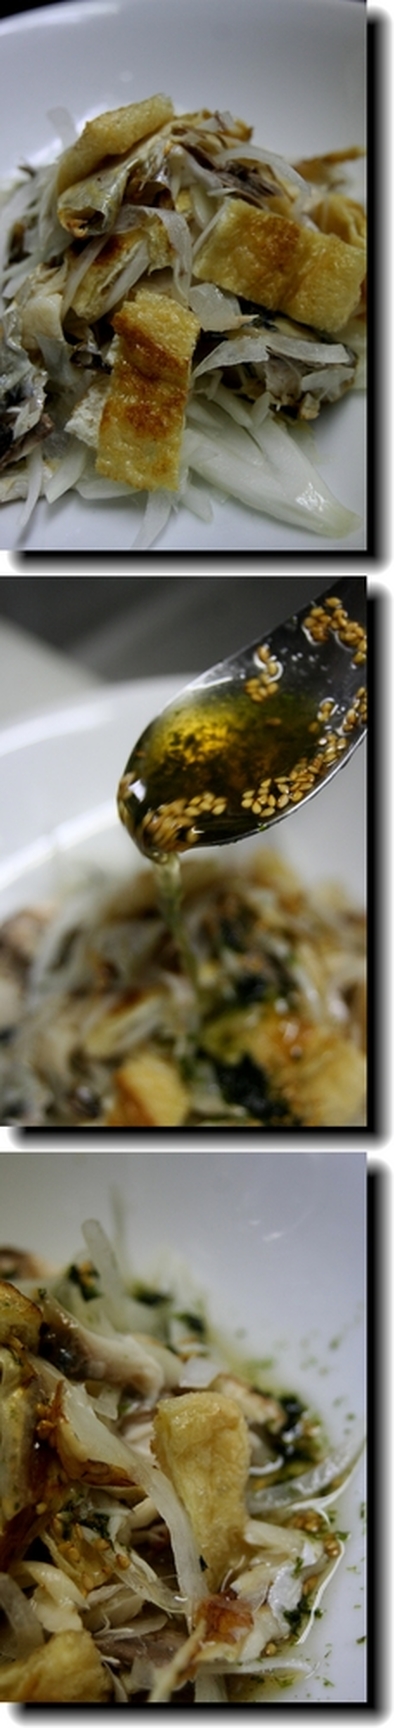 焼き鯖サラダの写真